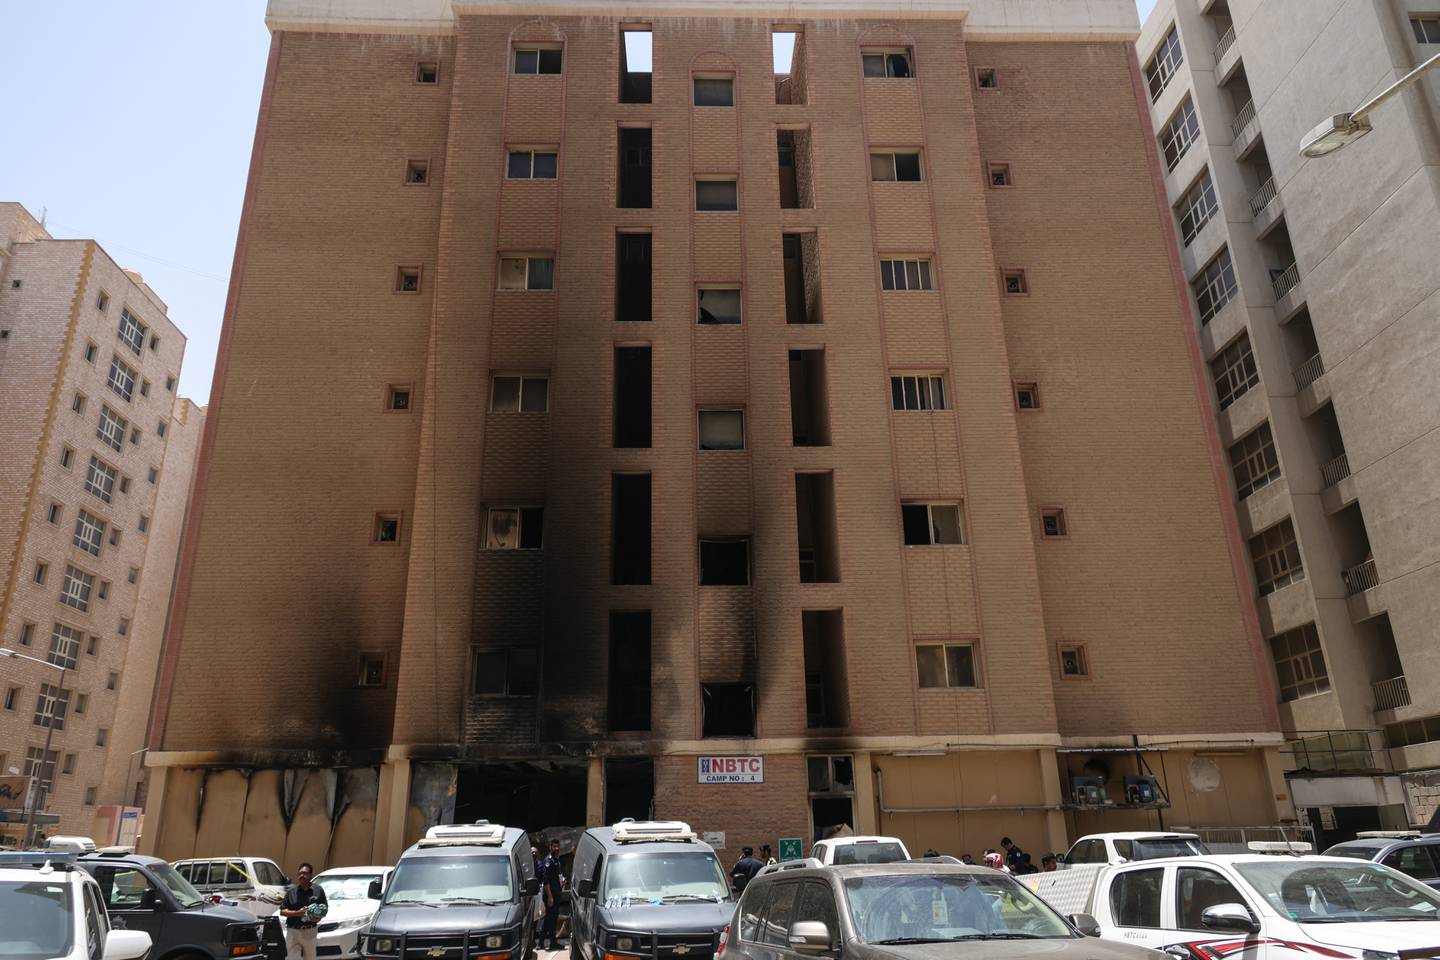 El dueño del edificio fue detenido como parte de una investigación por posible negligencia. El ministro del Interior, jeque Fahd al Yusef, afirmó que solicitaría la evacuación de todos los edificios en los suburbios que no cumplan con las normas de seguridad.